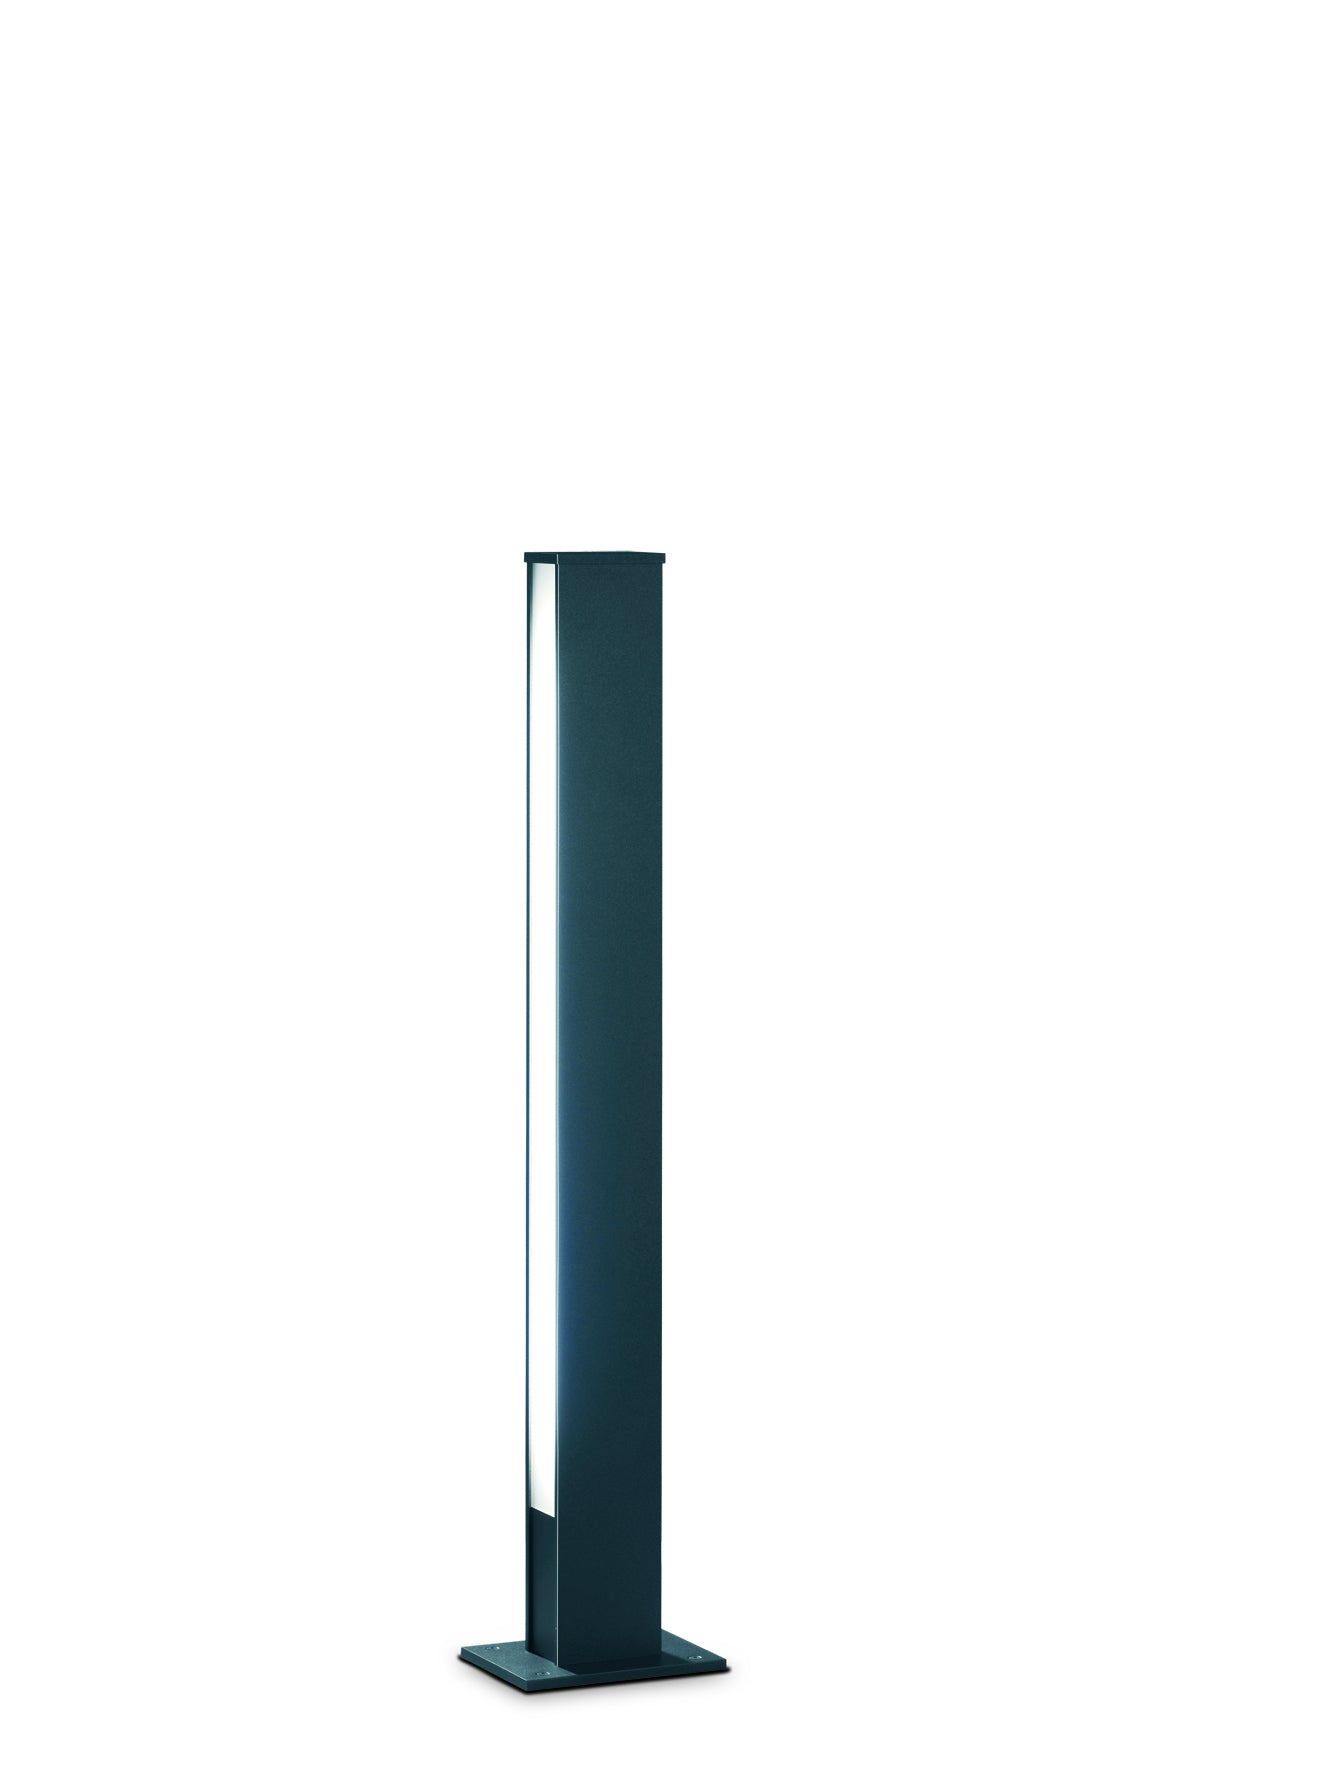 Leuchte Tendo 44, Höhe 108 cm, IP55, graphit